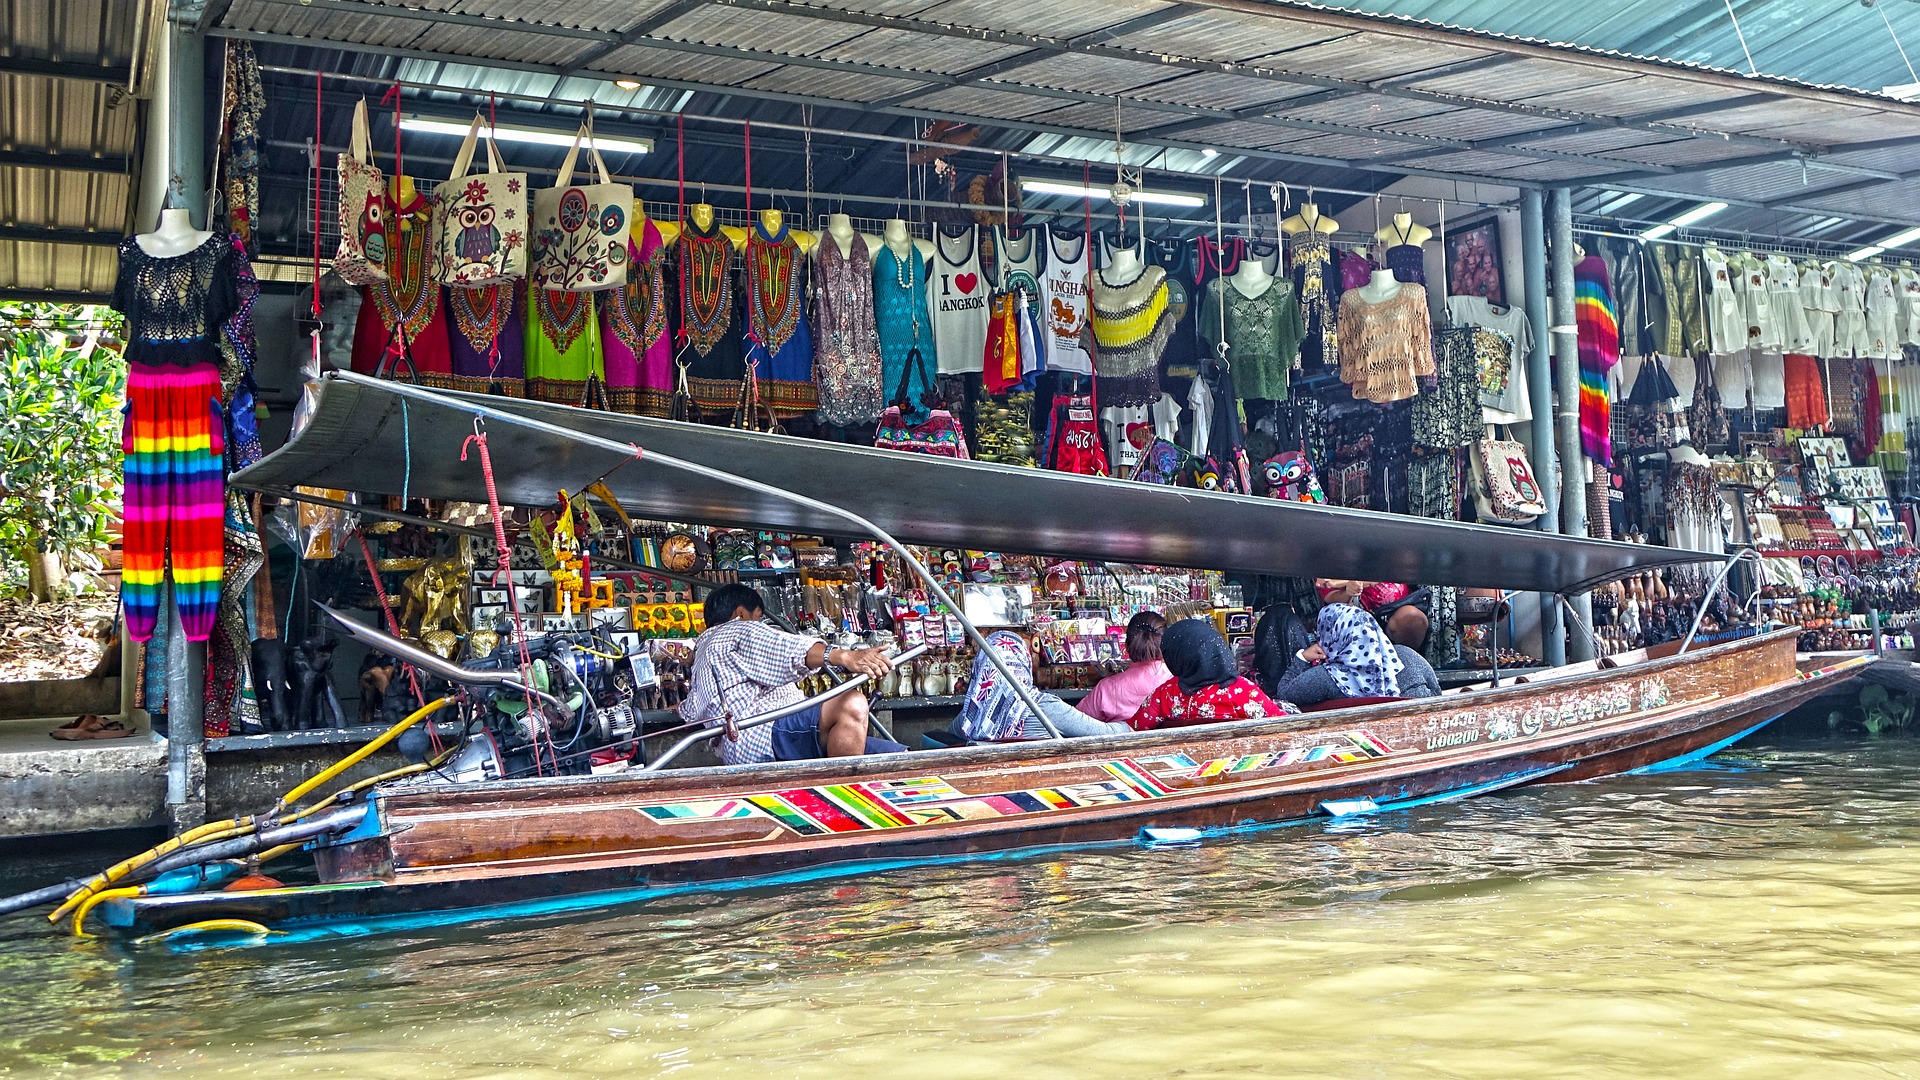 Saduak floating market photo